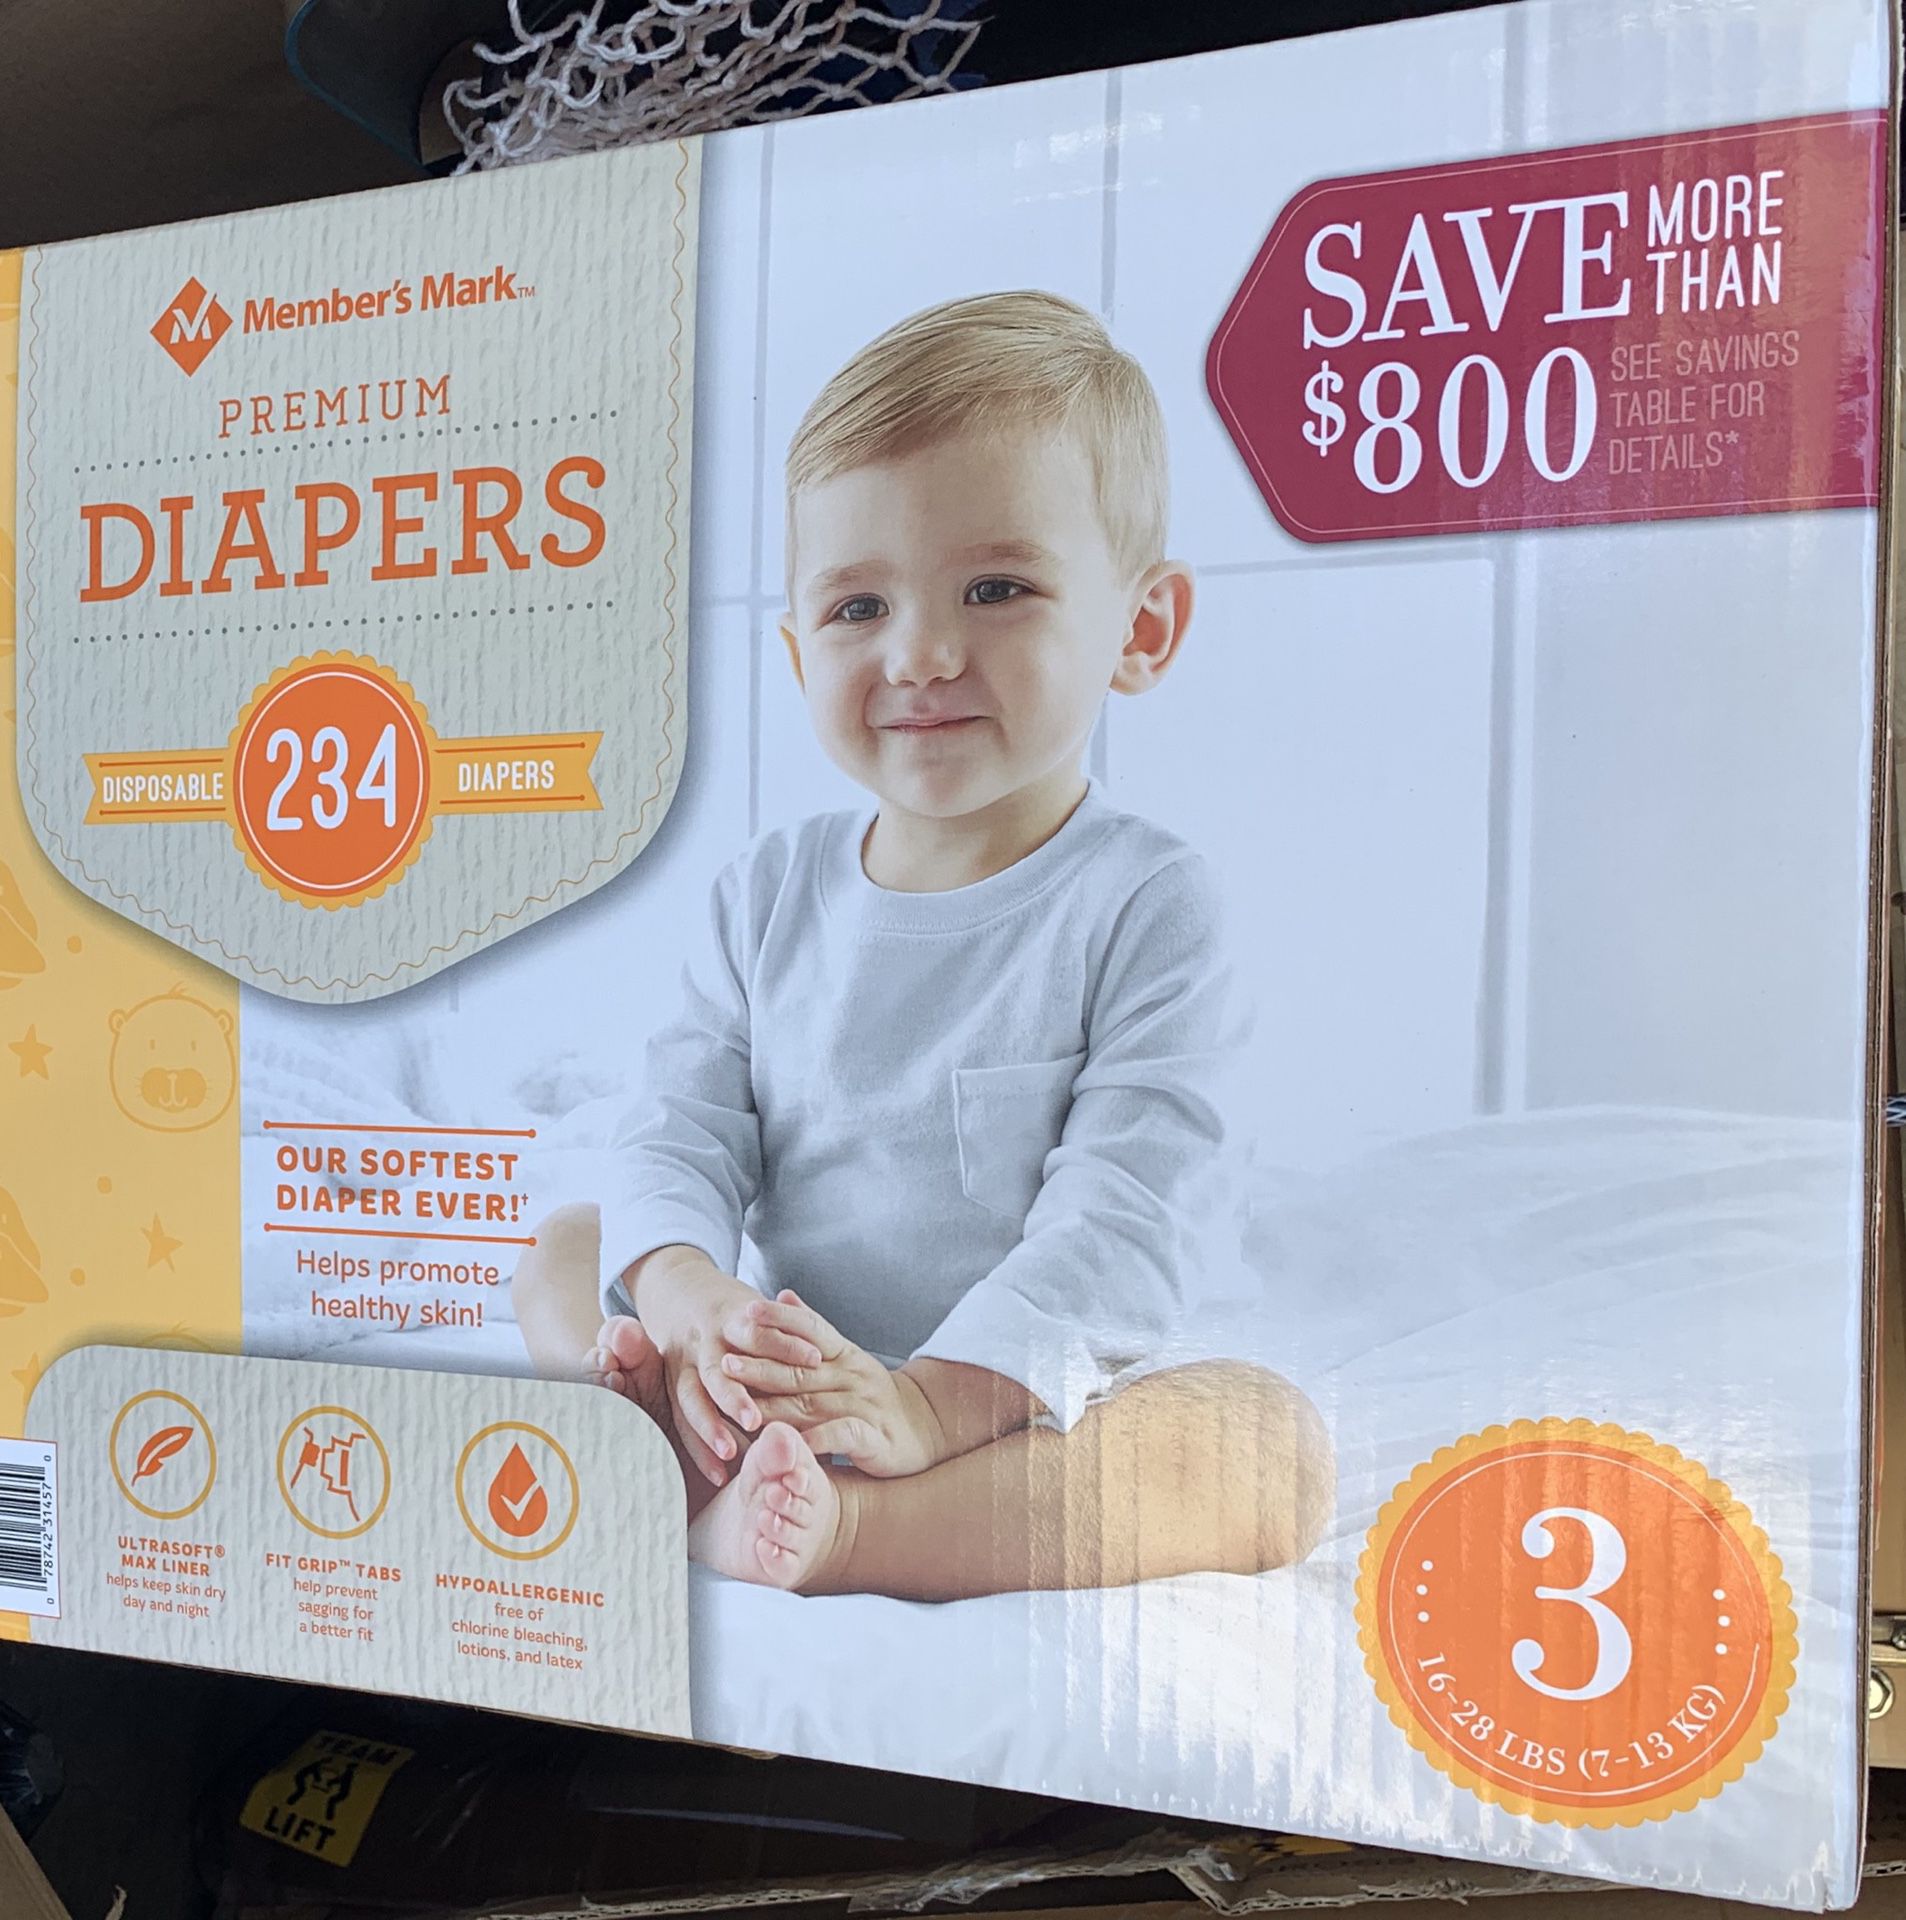 Members mark diapers